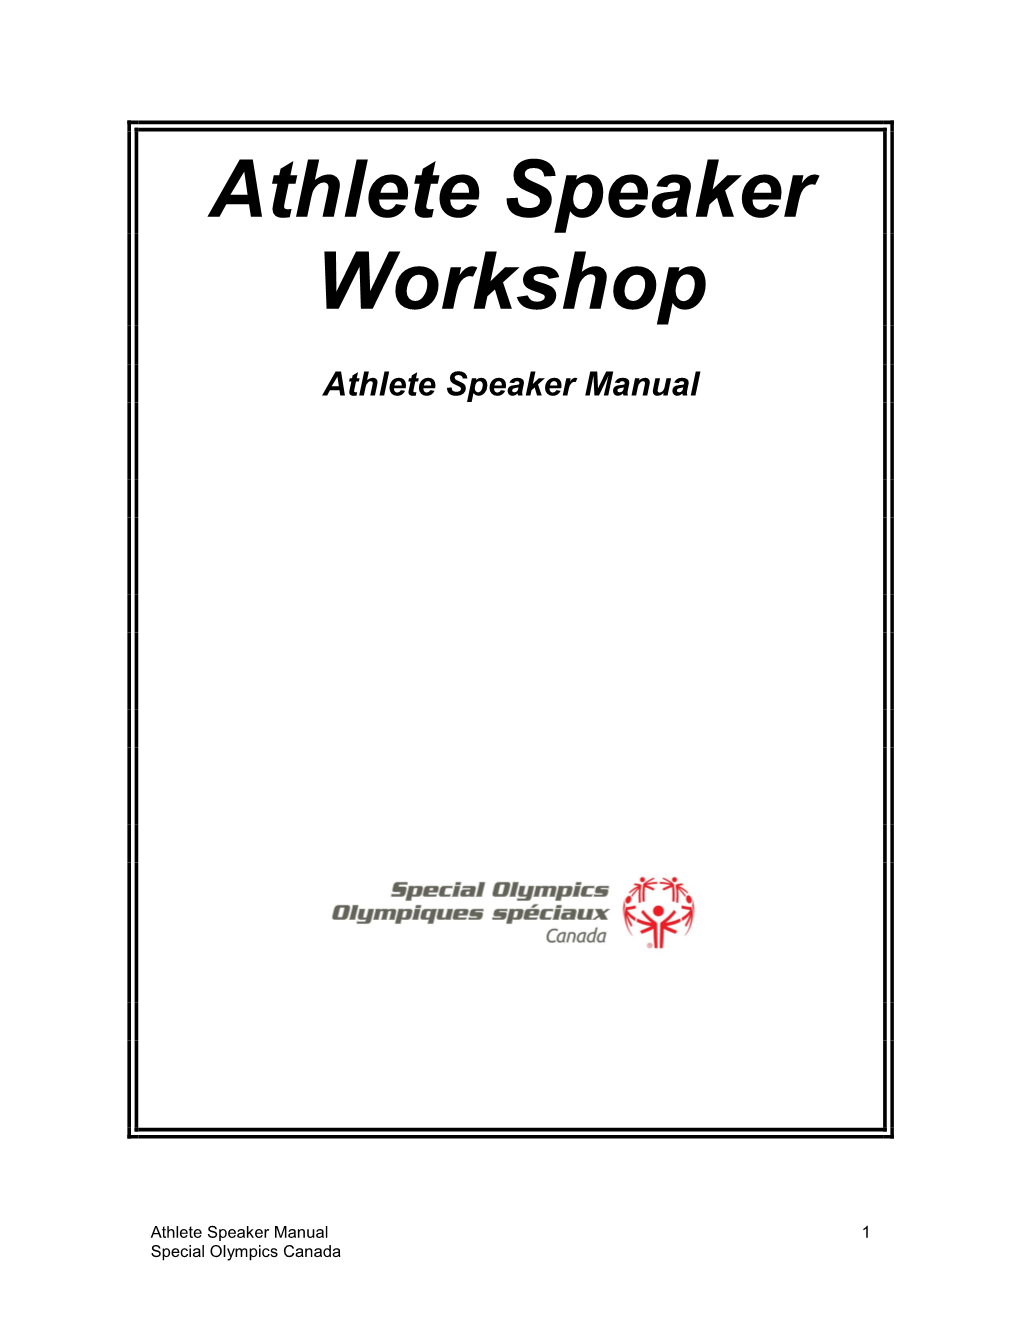 Athlete Ambassador Workshop